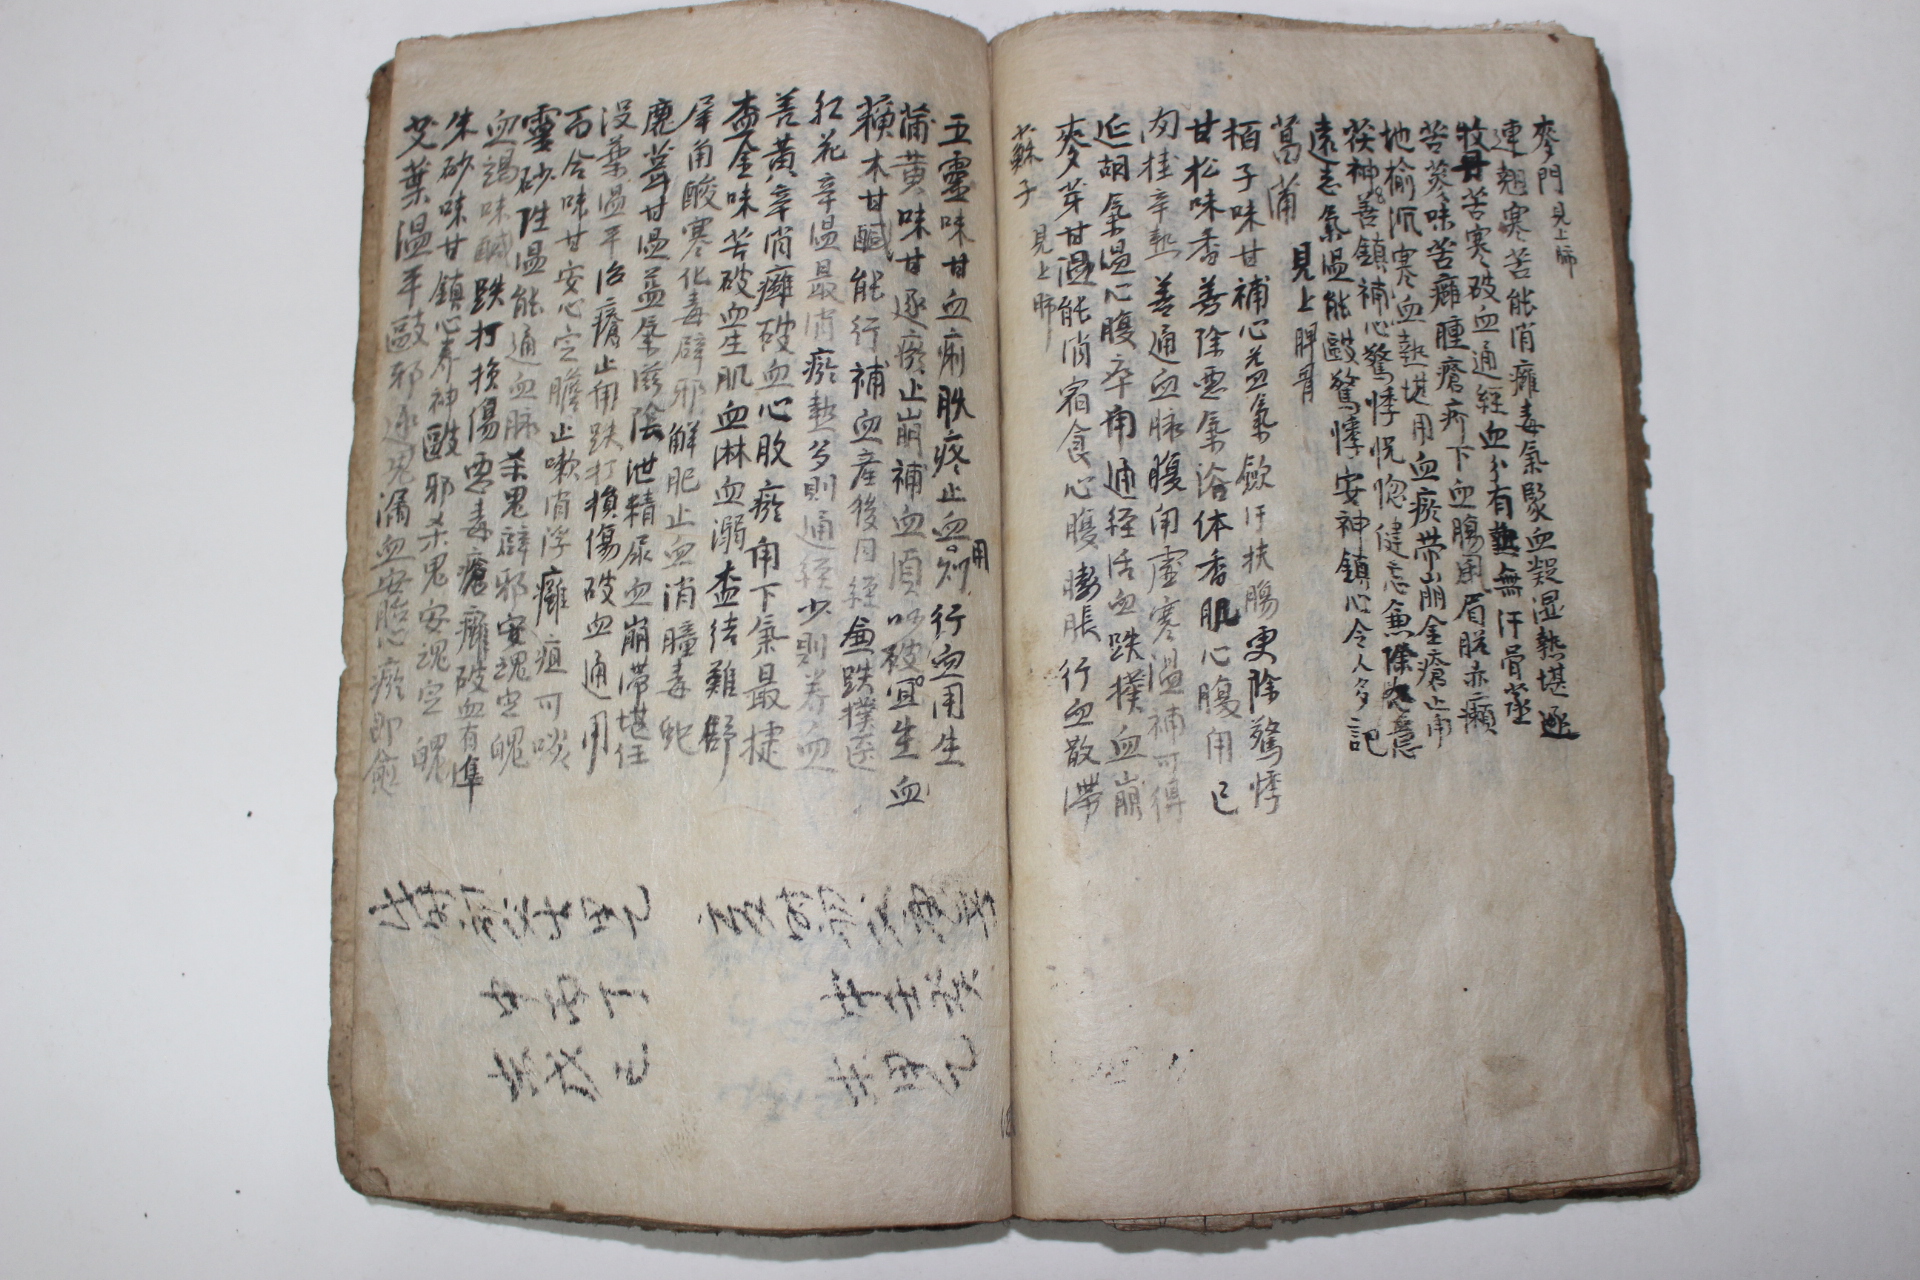 조선시대 고필사본 의서 경험두질방(經驗痘疾方)